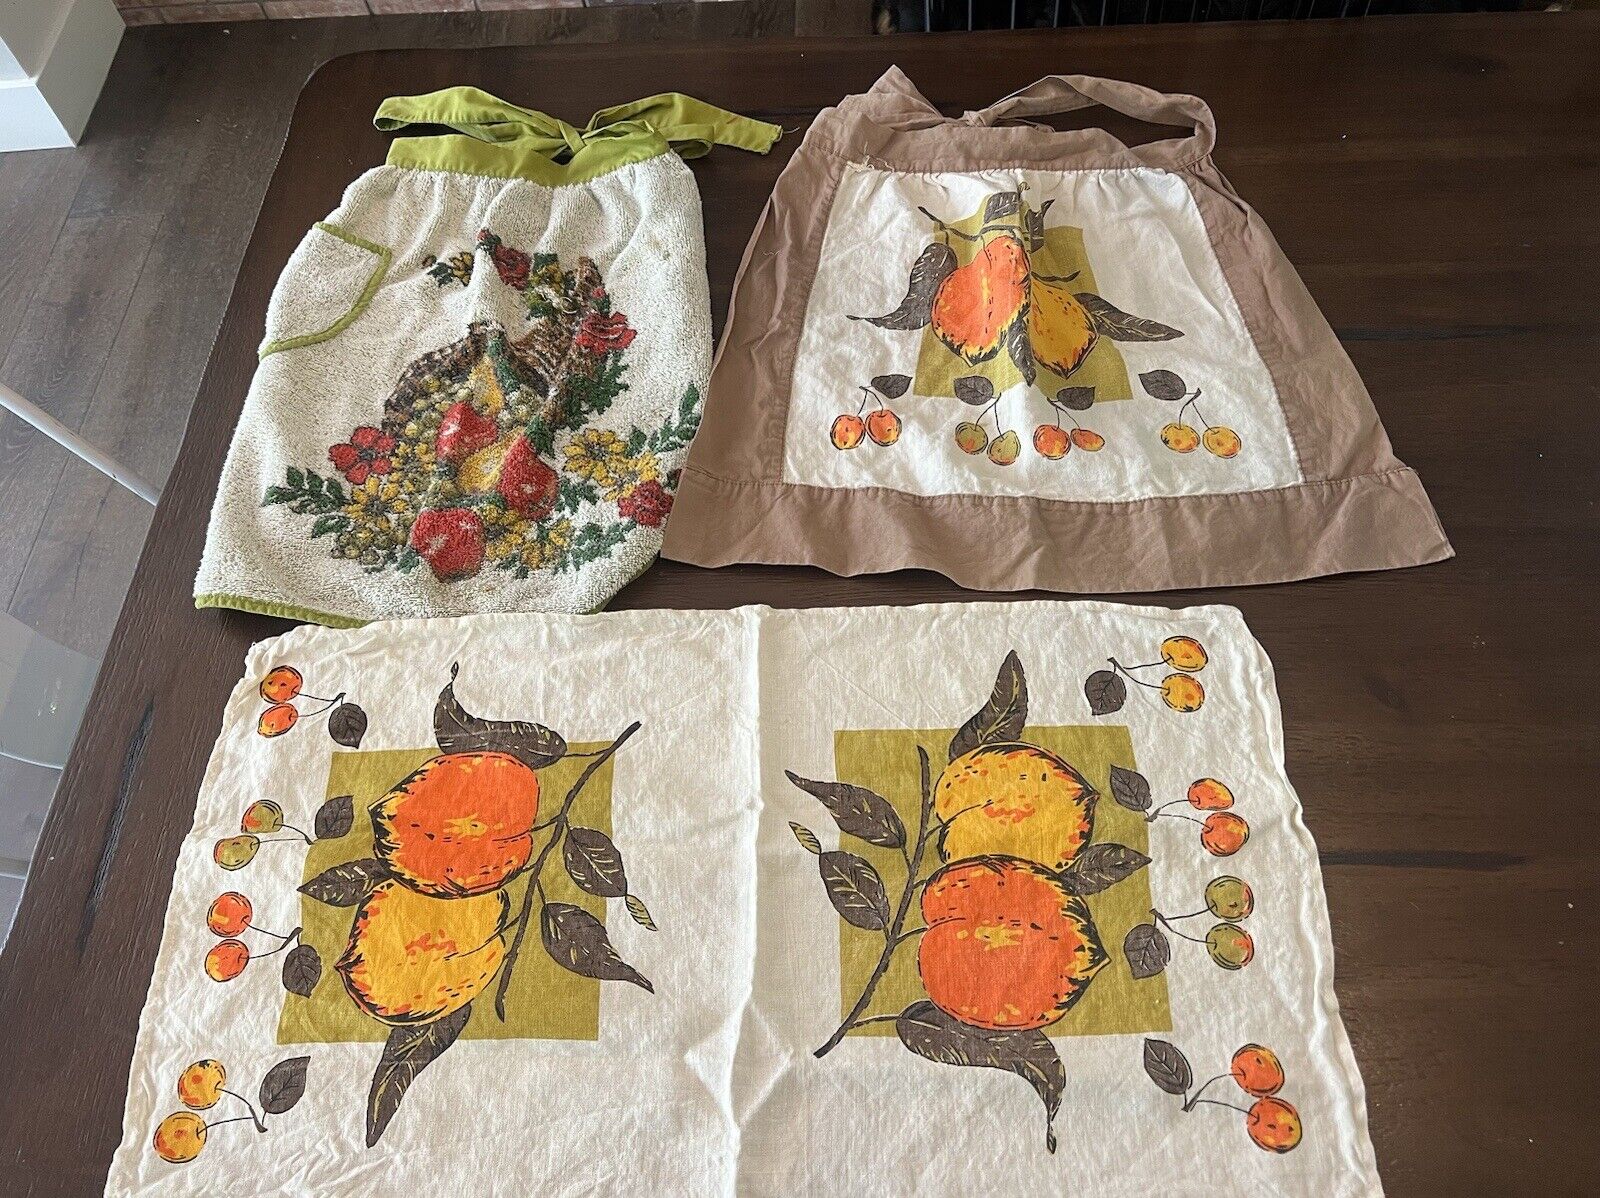 Vintage 60’s 70s Terry Cloth Half Apron & Dishtowel Lot Matching Fruit Floral